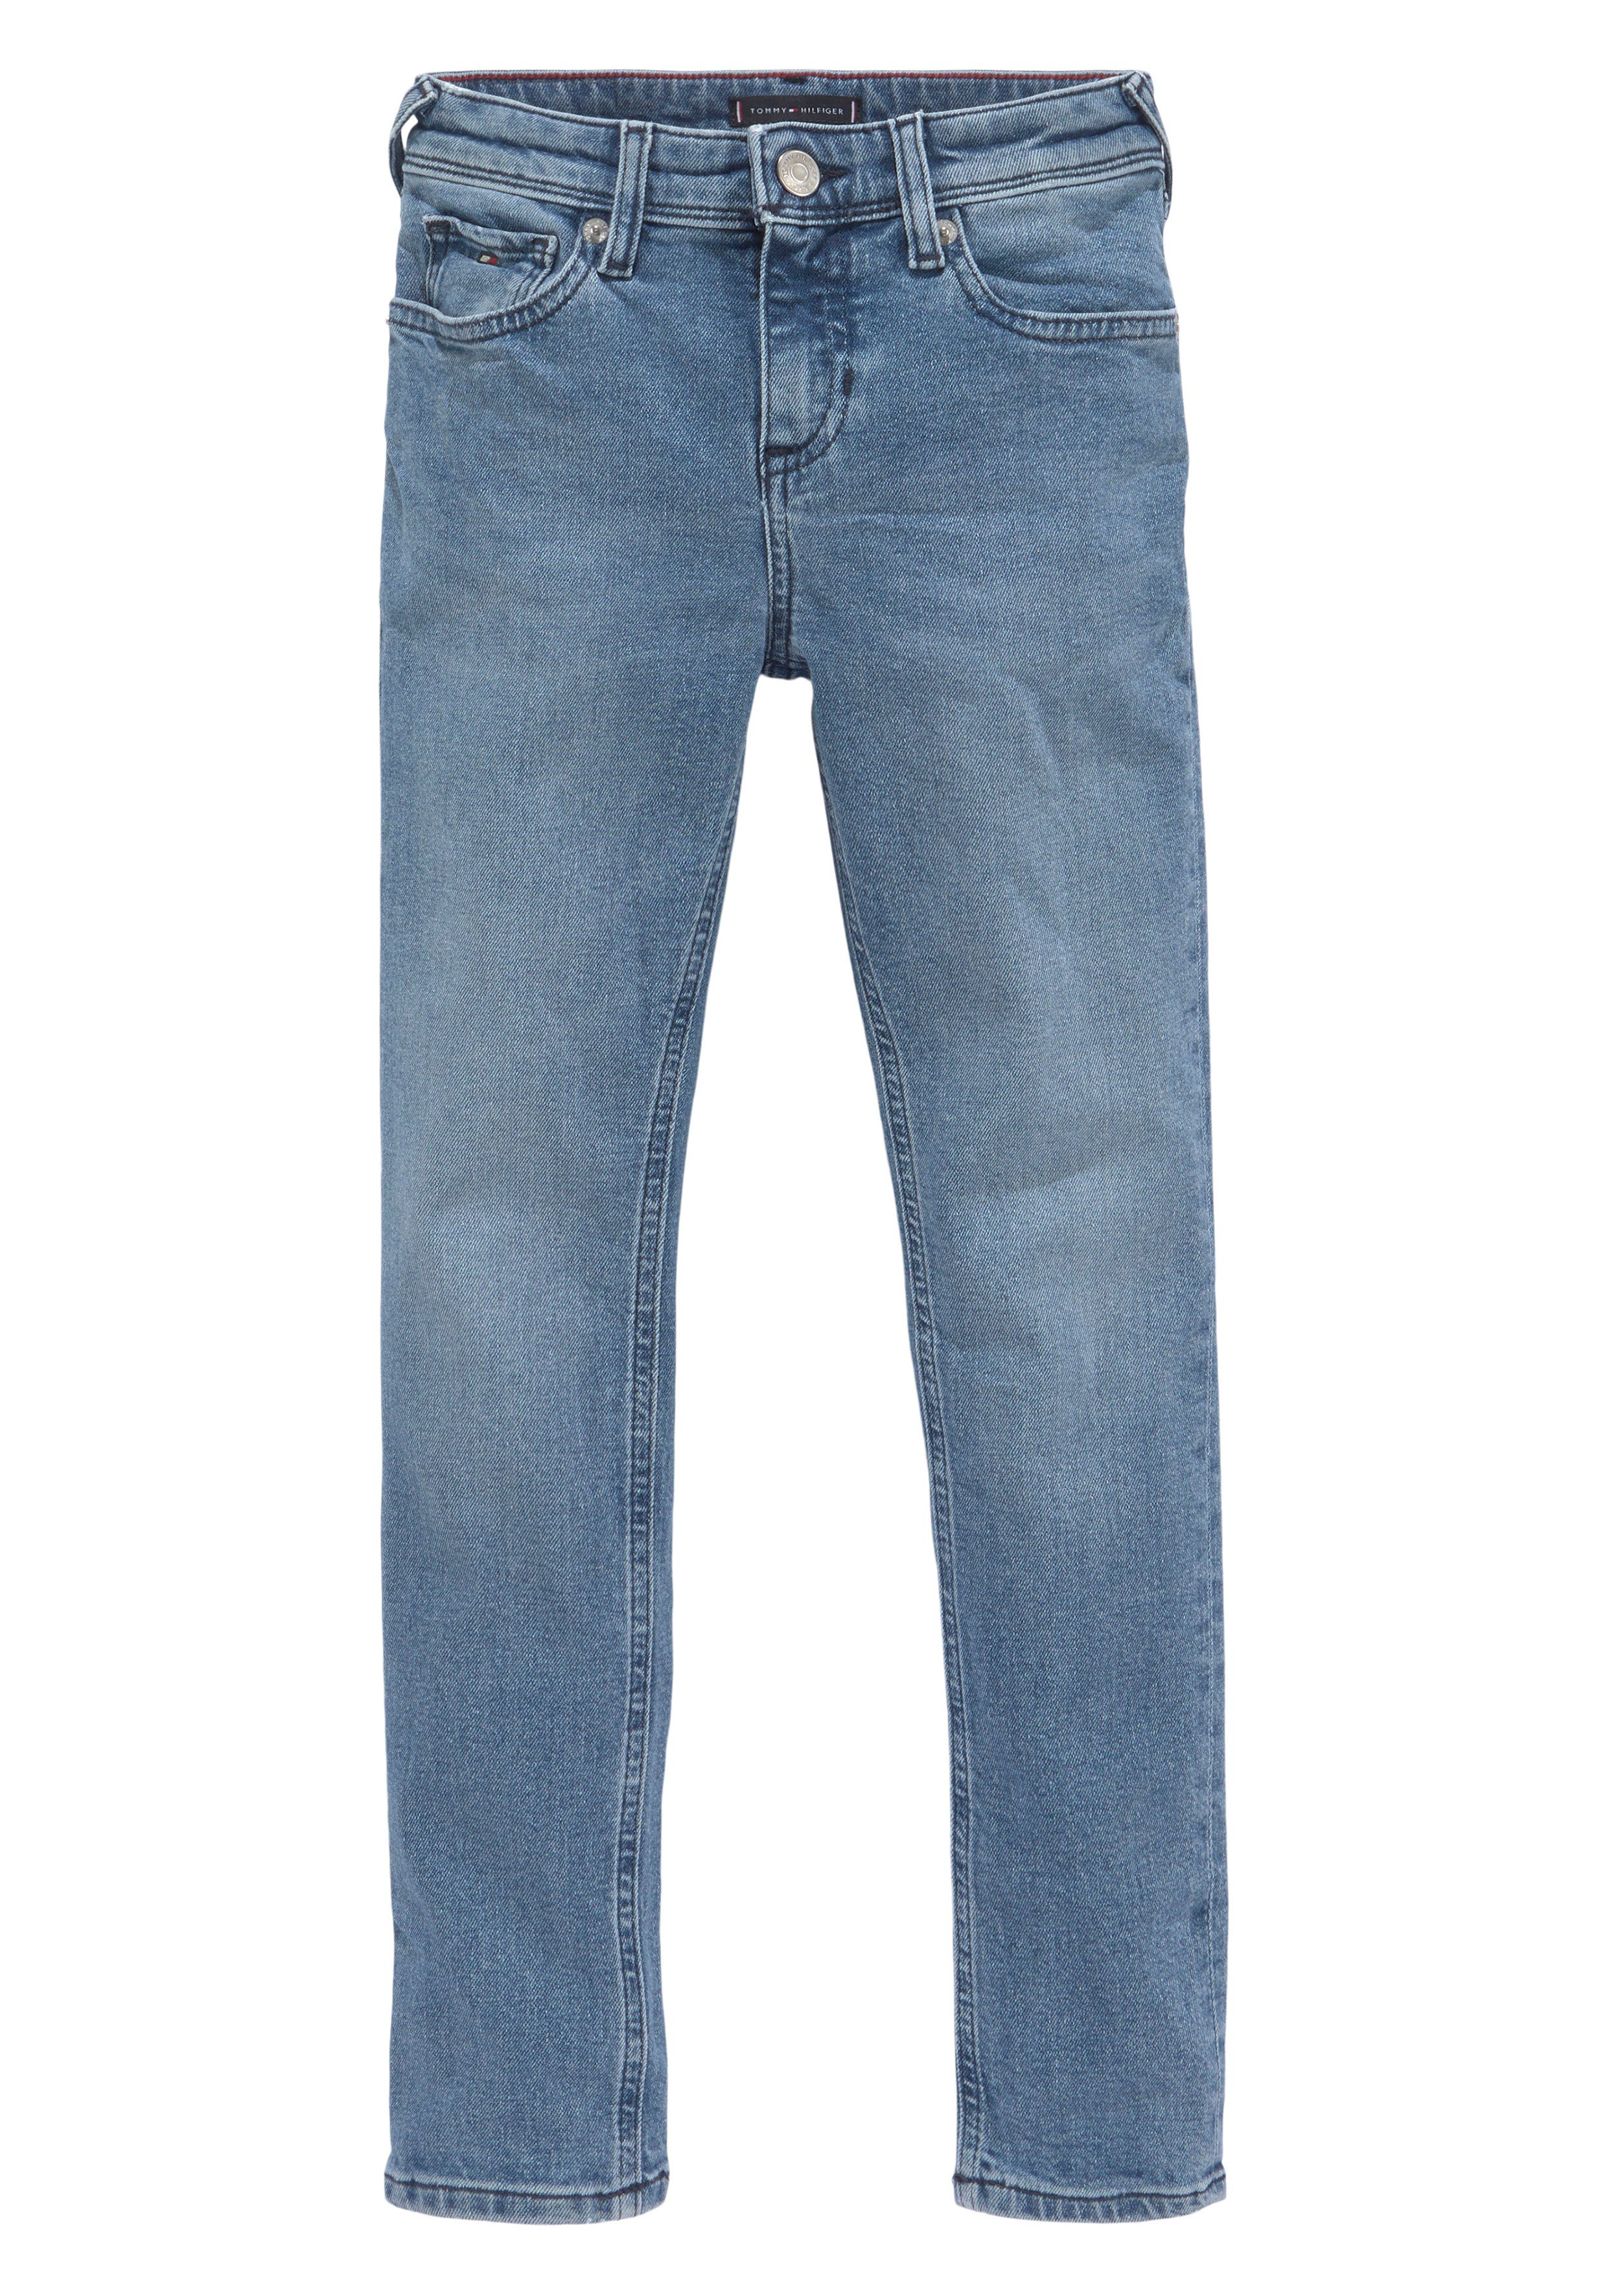 Hilfiger Stretch-Jeans SCANTON MID Tommy Y BLUE Leder-Badge mit